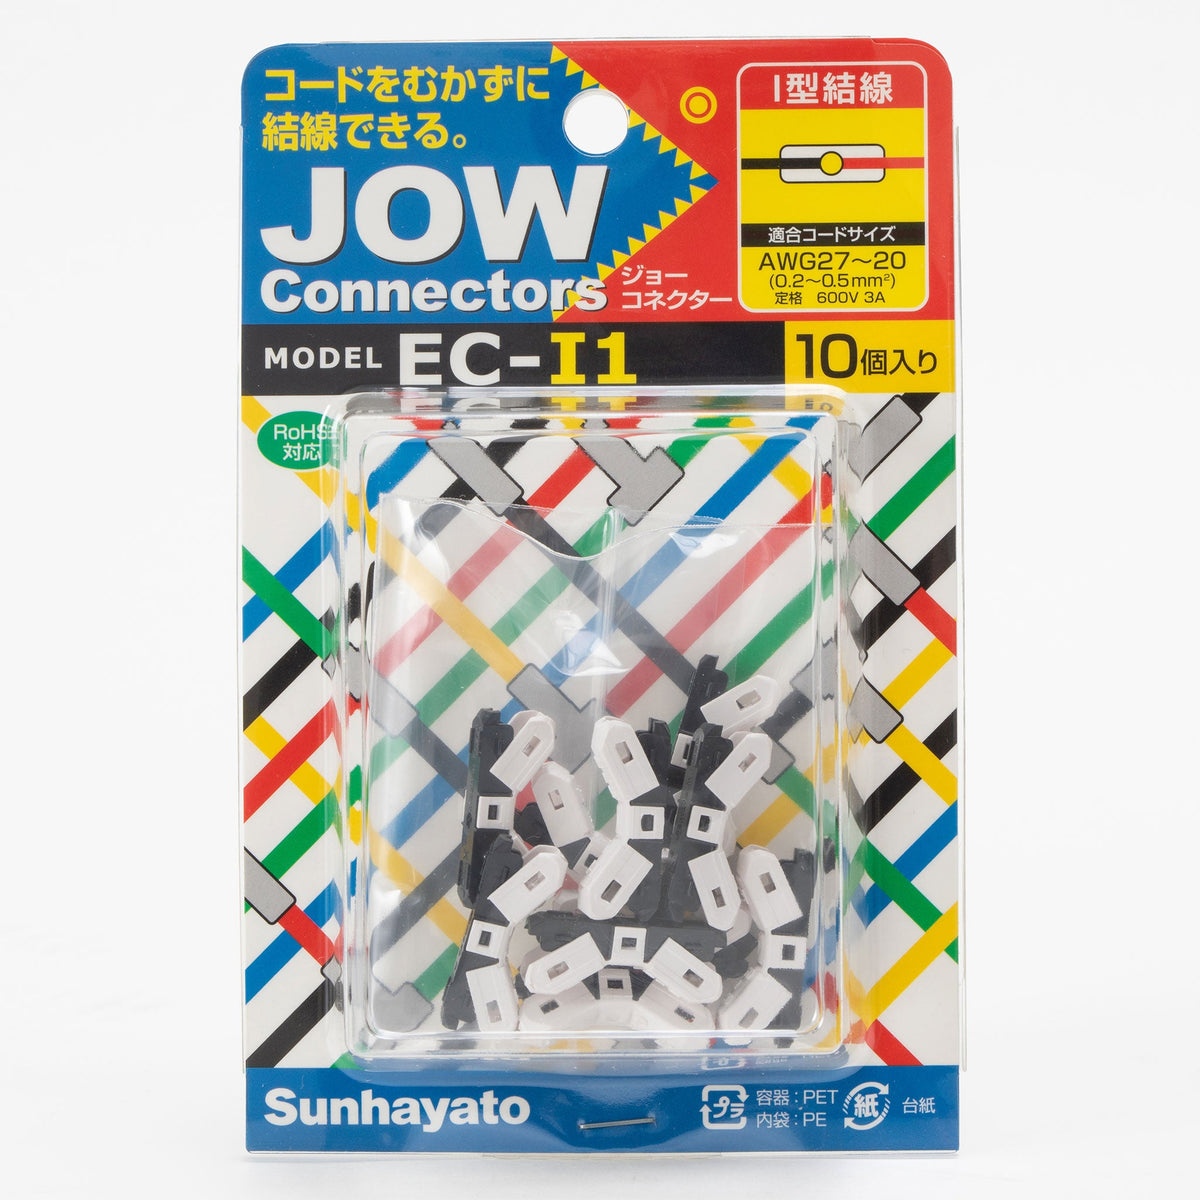 JOW Connectors（ジョーコネクター）（EC-I1） — サンハヤト 公式オンラインショップ